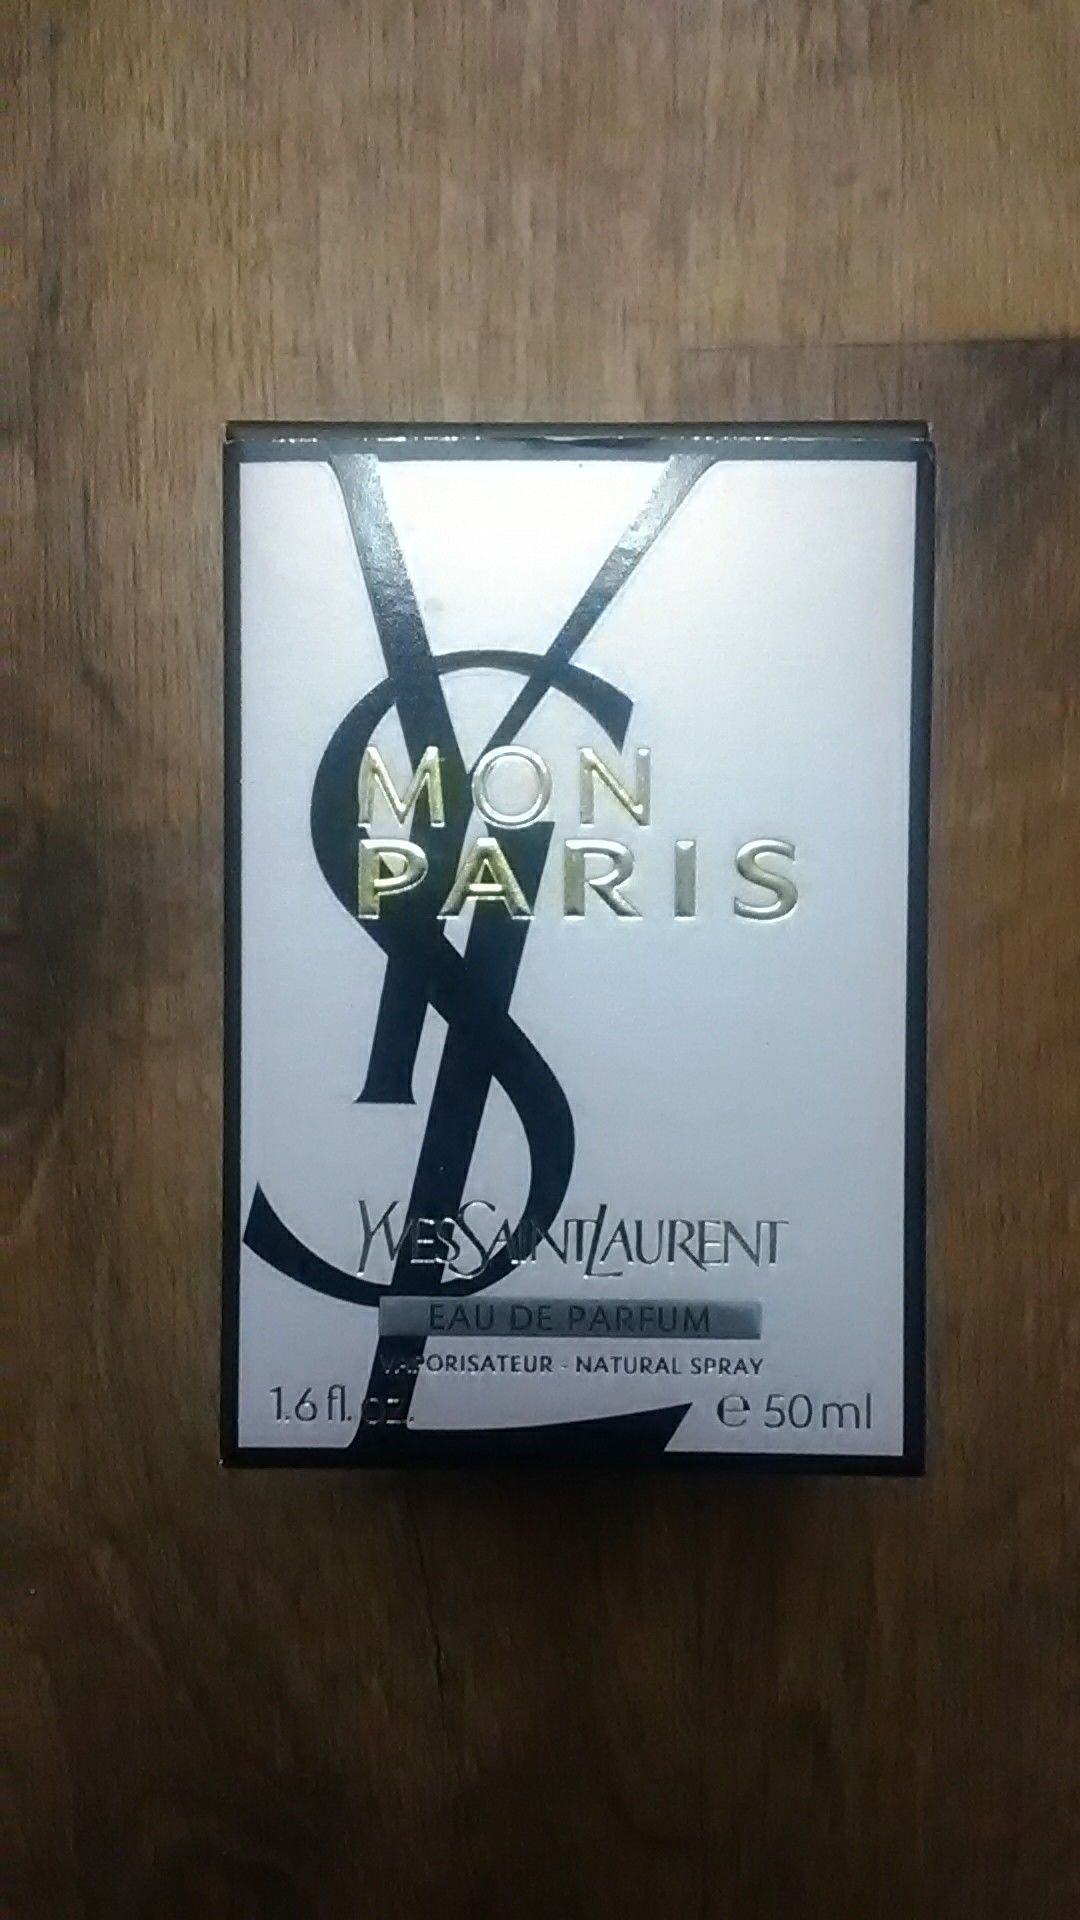 Yves Saint Laurent Perfume 1.6 fluid ounces brand new